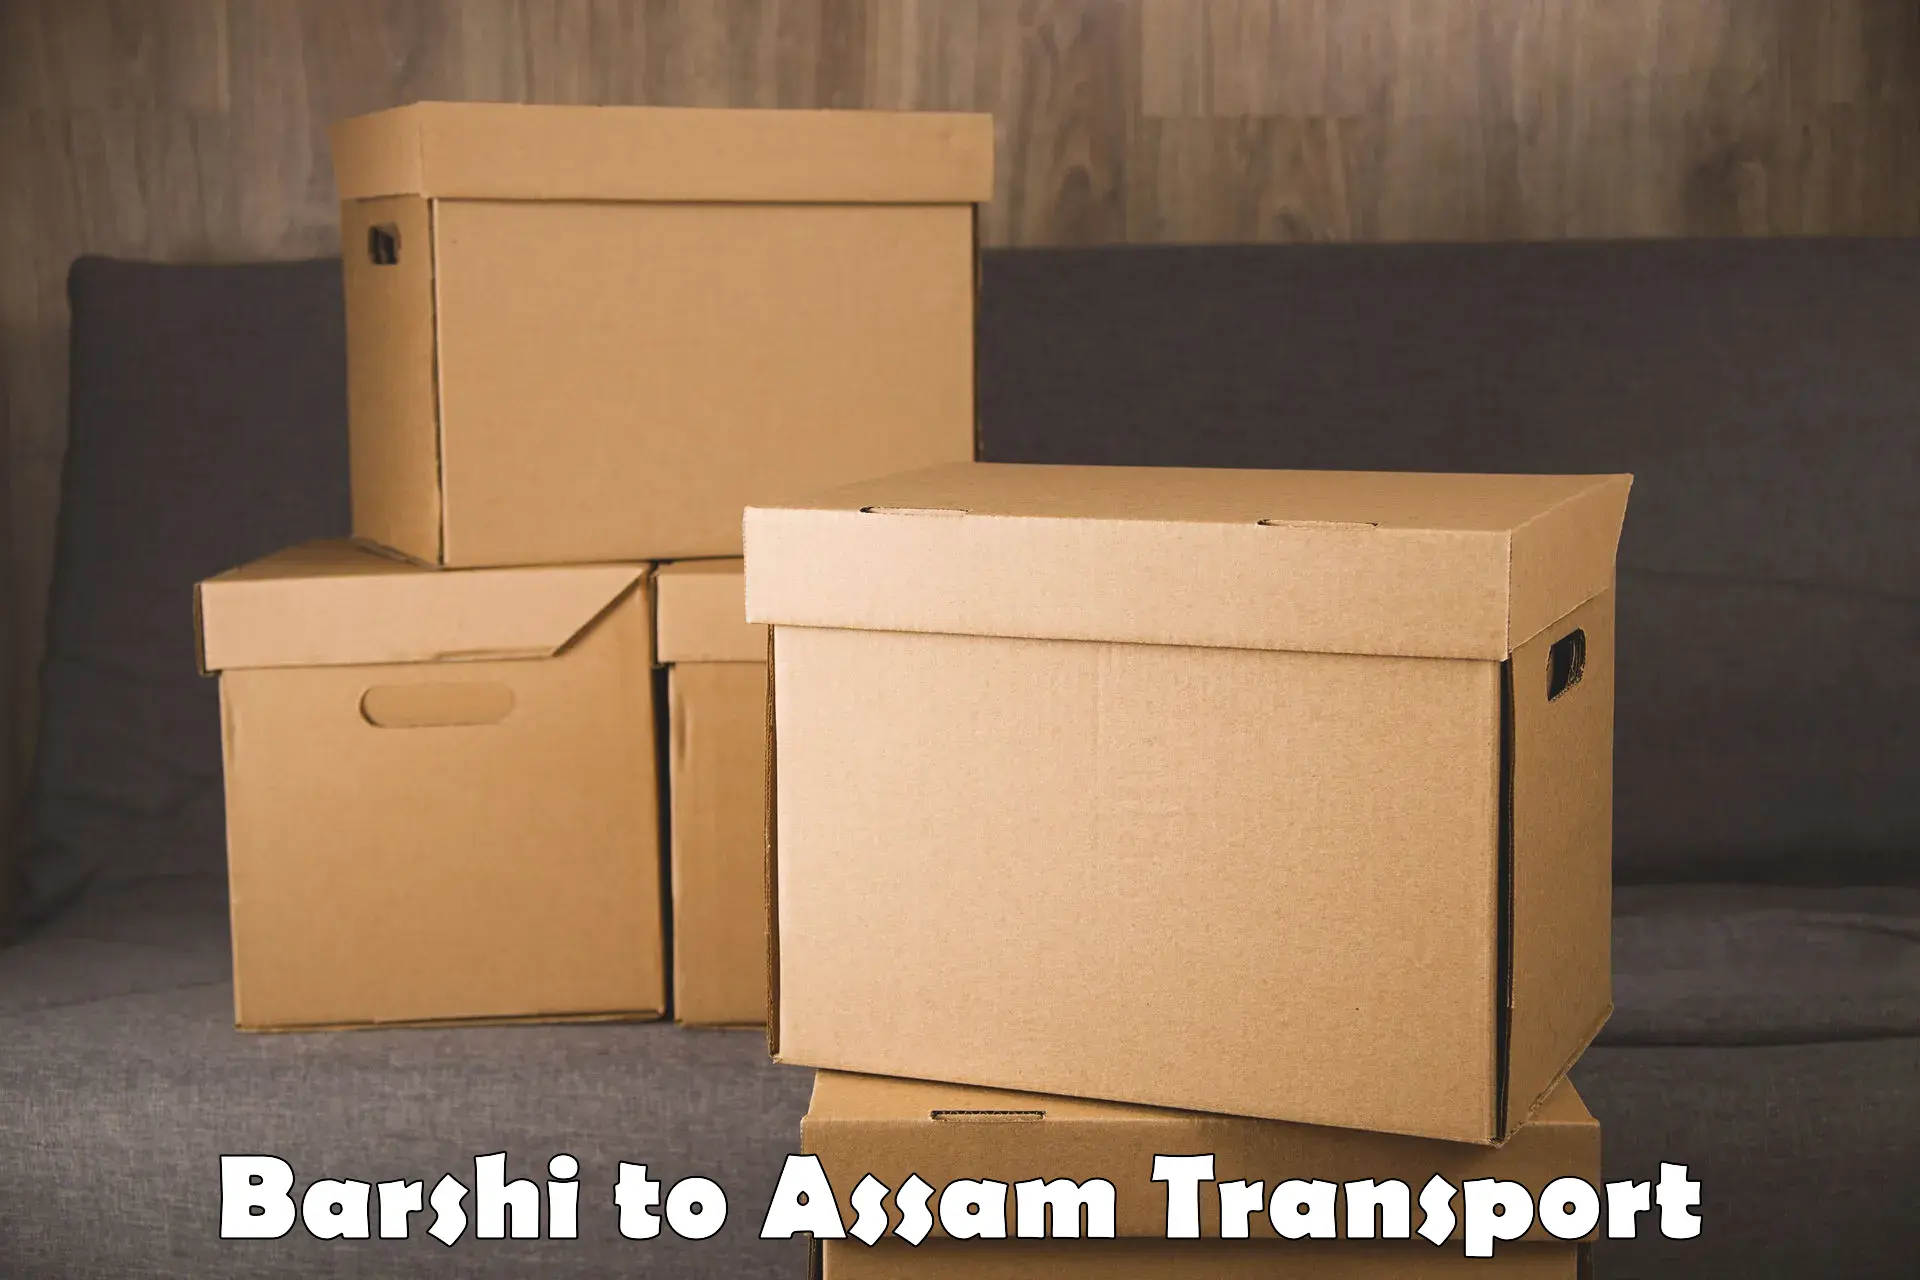 International cargo transportation services Barshi to Hajo